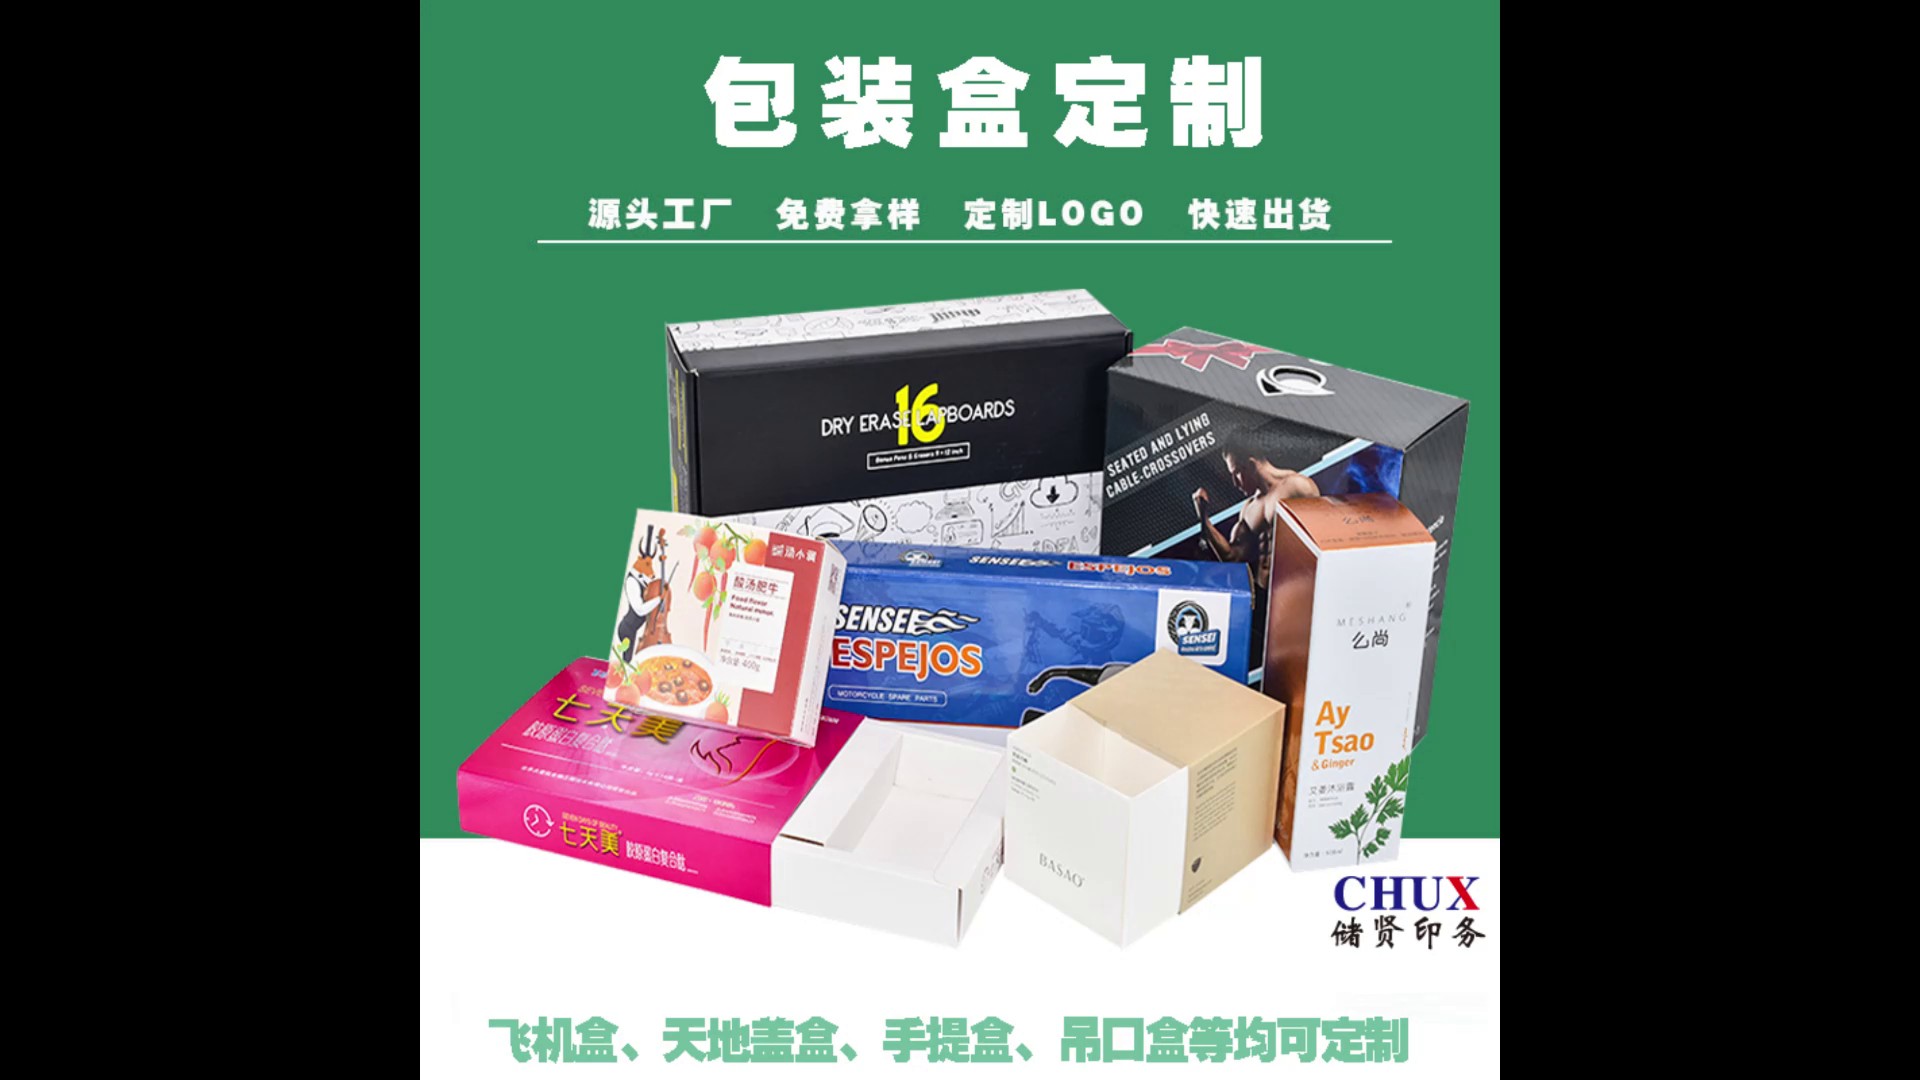 松江区食用油包装盒印刷发货,包装盒印刷